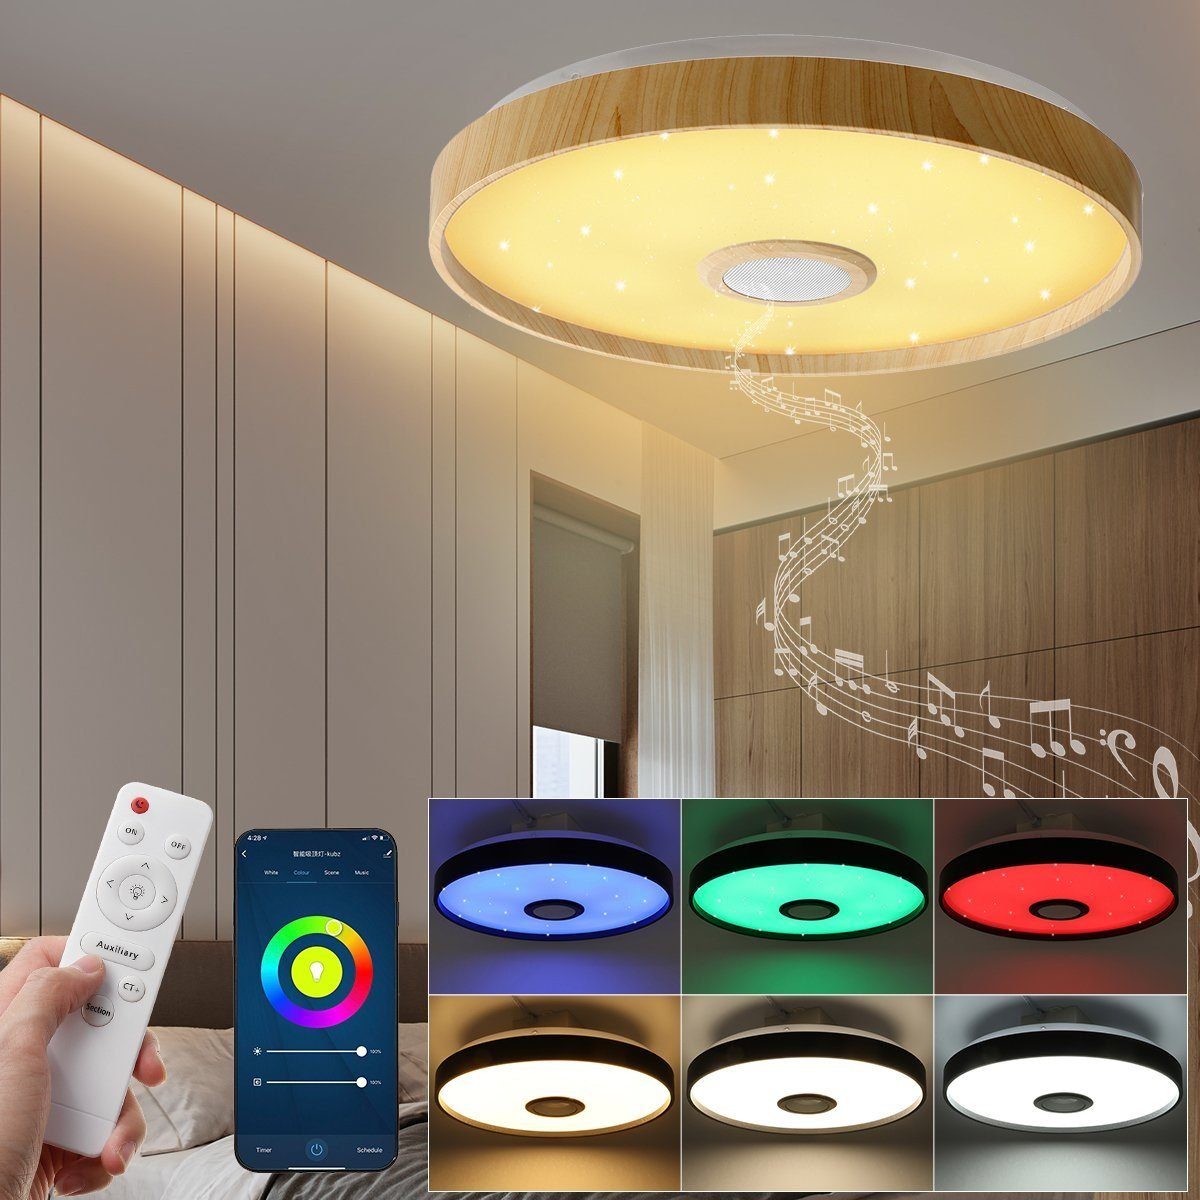 LED Decken Leuchte Lampe Bluetooth Lautsprecher Farbwechsler Wohn Schlaf Zimmer 